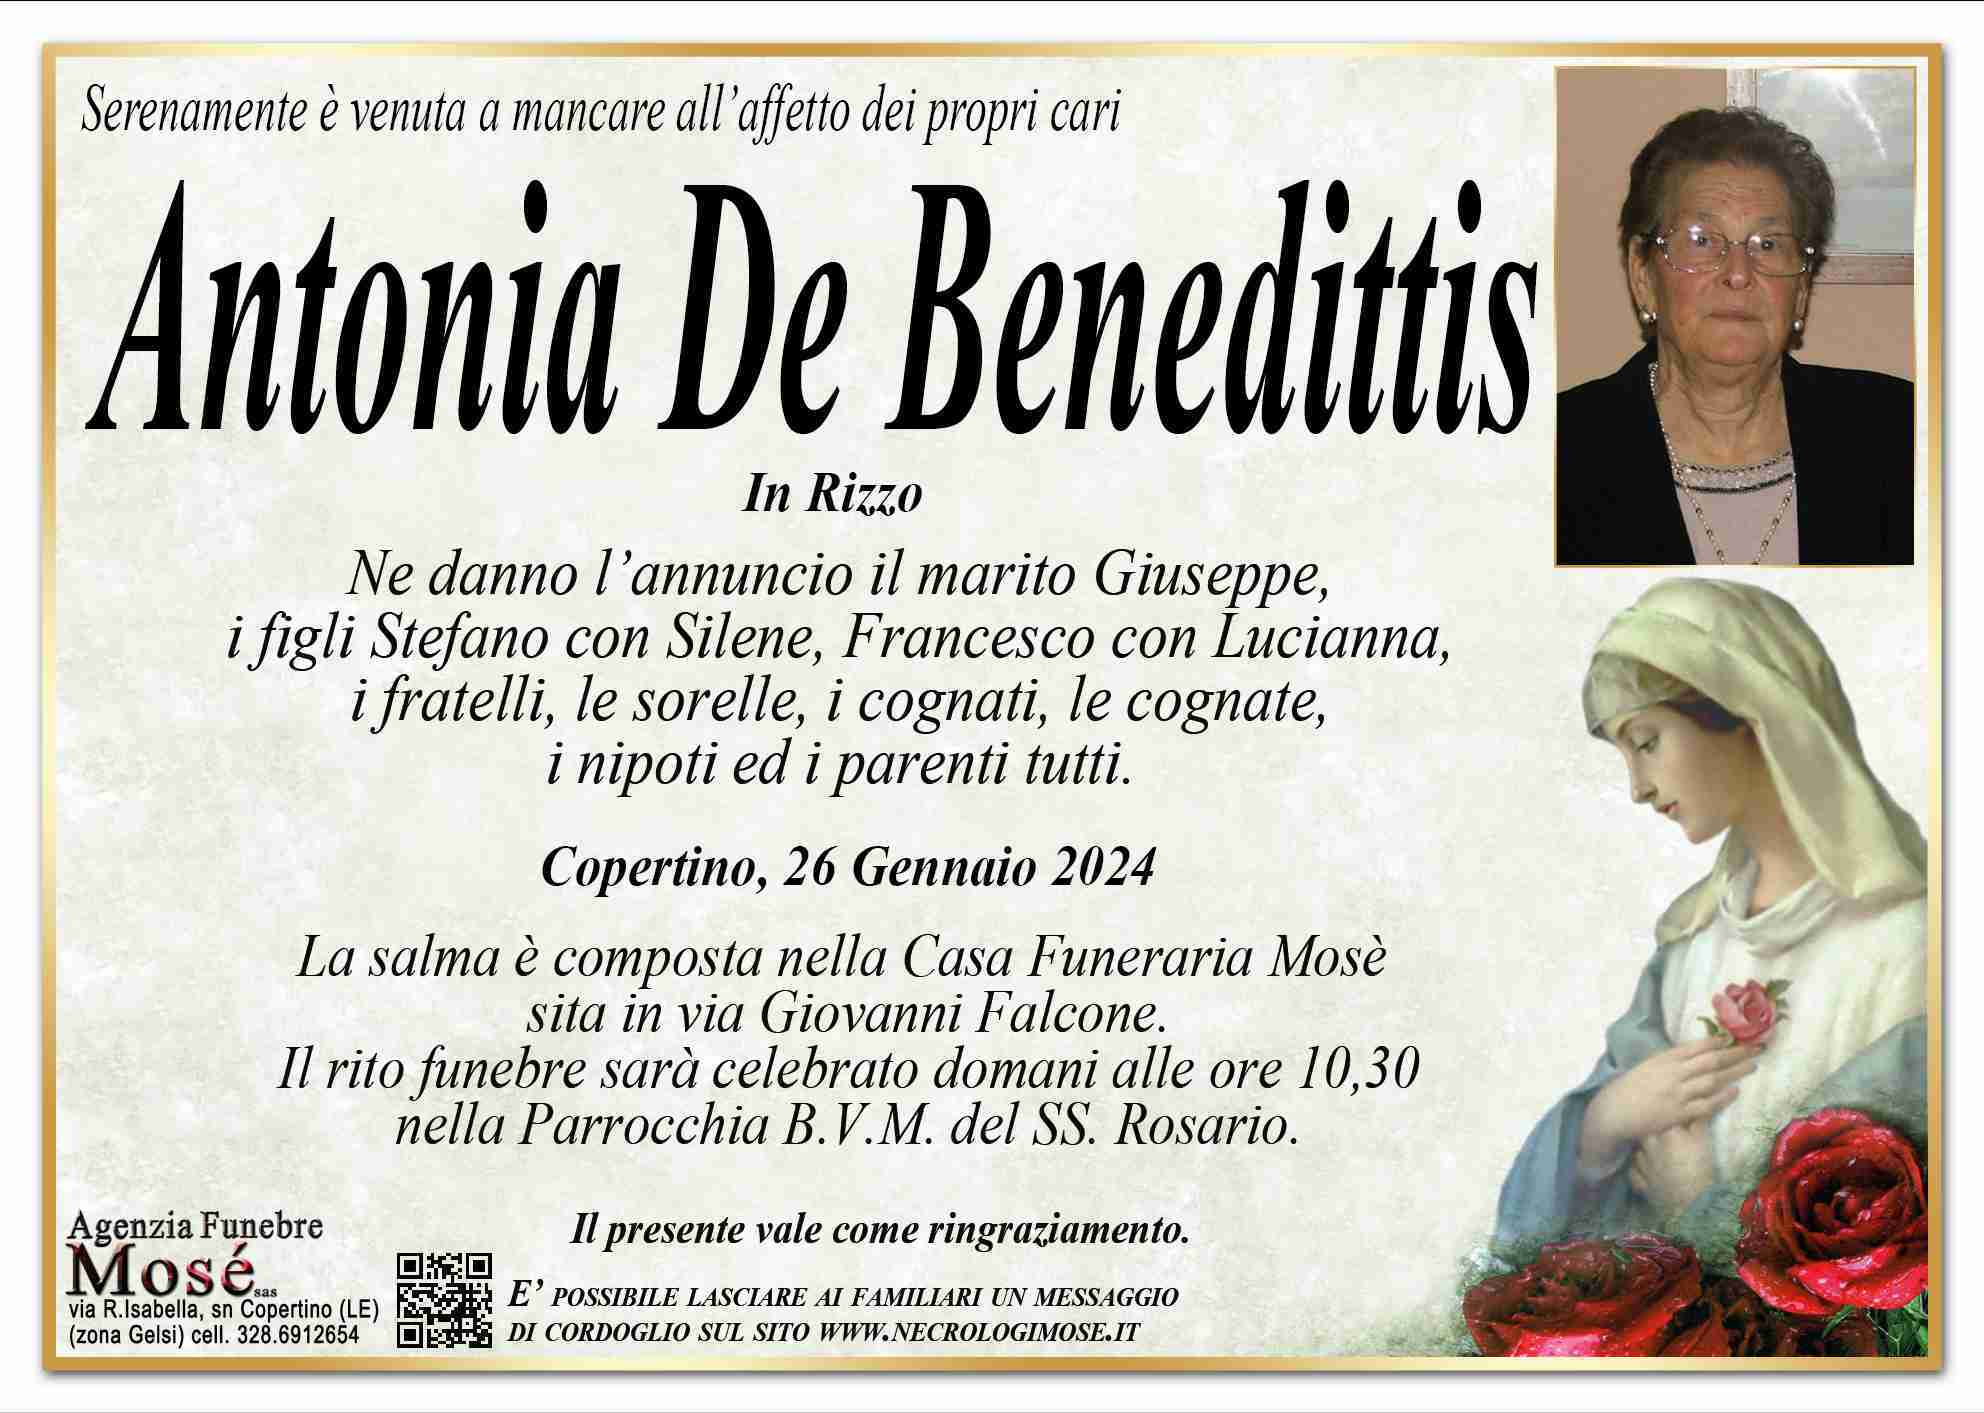 Antonia De Benedittis